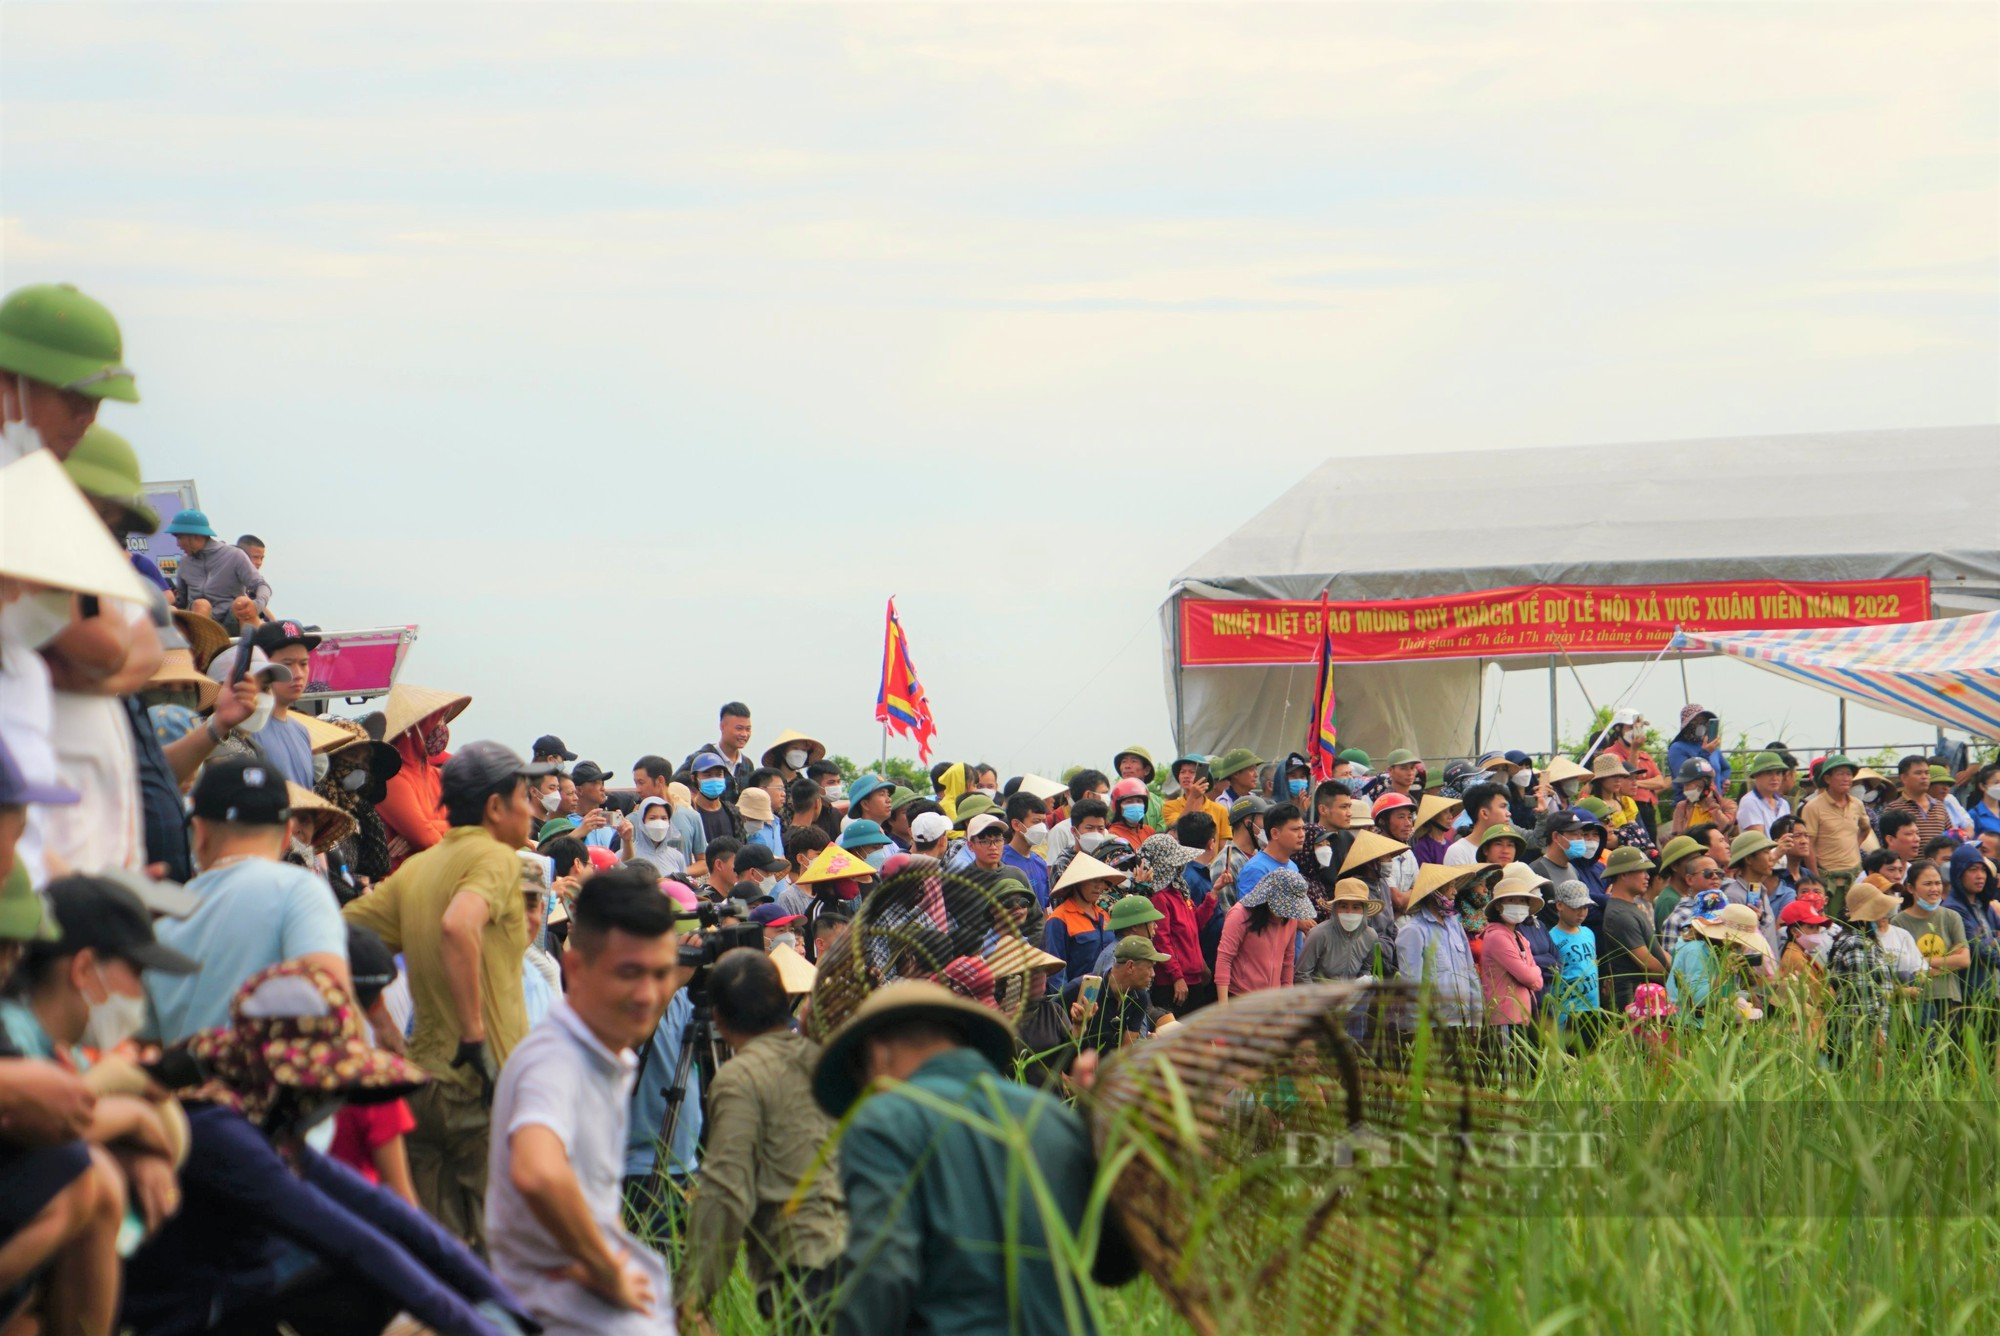 Lễ hội bắt cá Vực Rào tồn tại trên 300 năm ở Hà Tĩnh bắt nguồn từ đâu? - Ảnh 3.